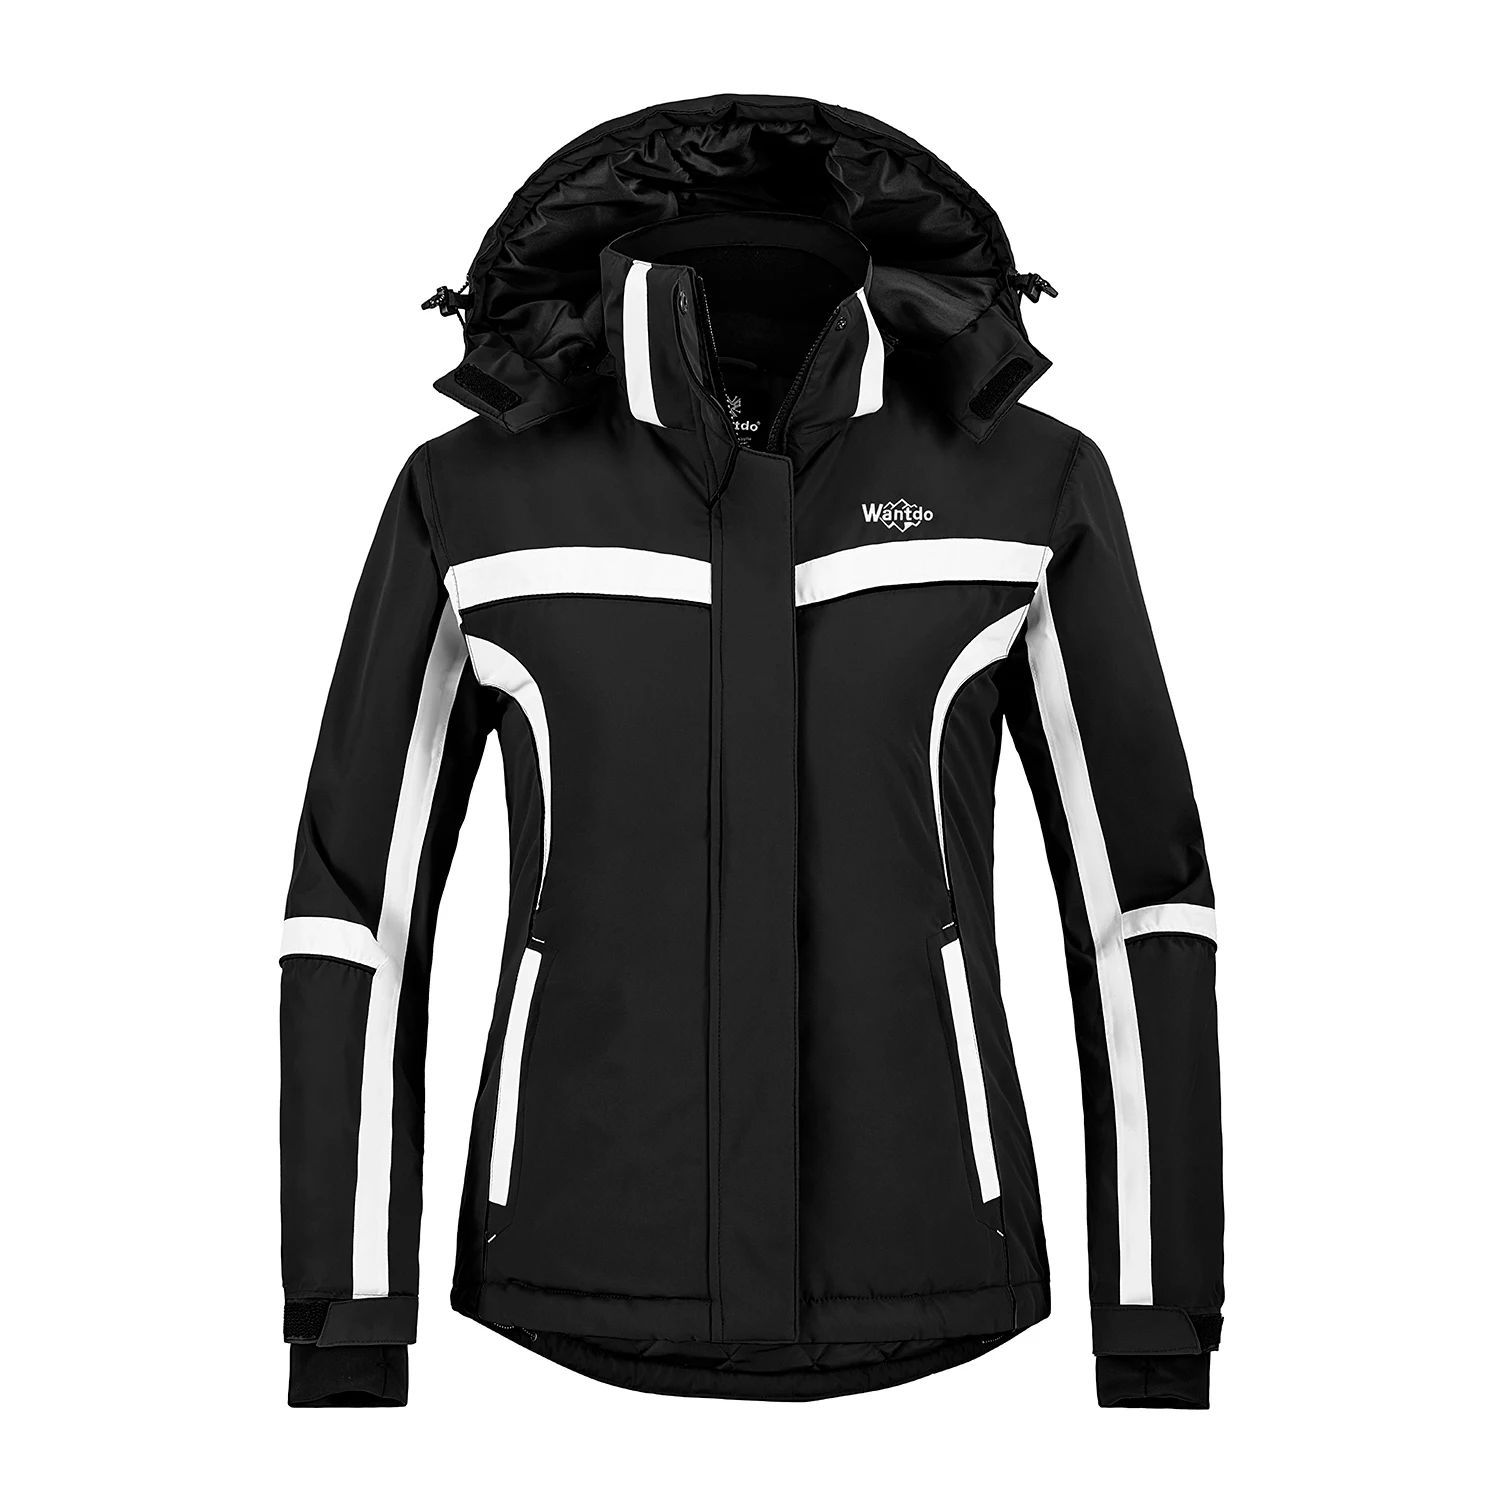 Wantdo Women's Winter Ski Jackets Hooded Waterproof Windproof Outdoor Sports Parka 